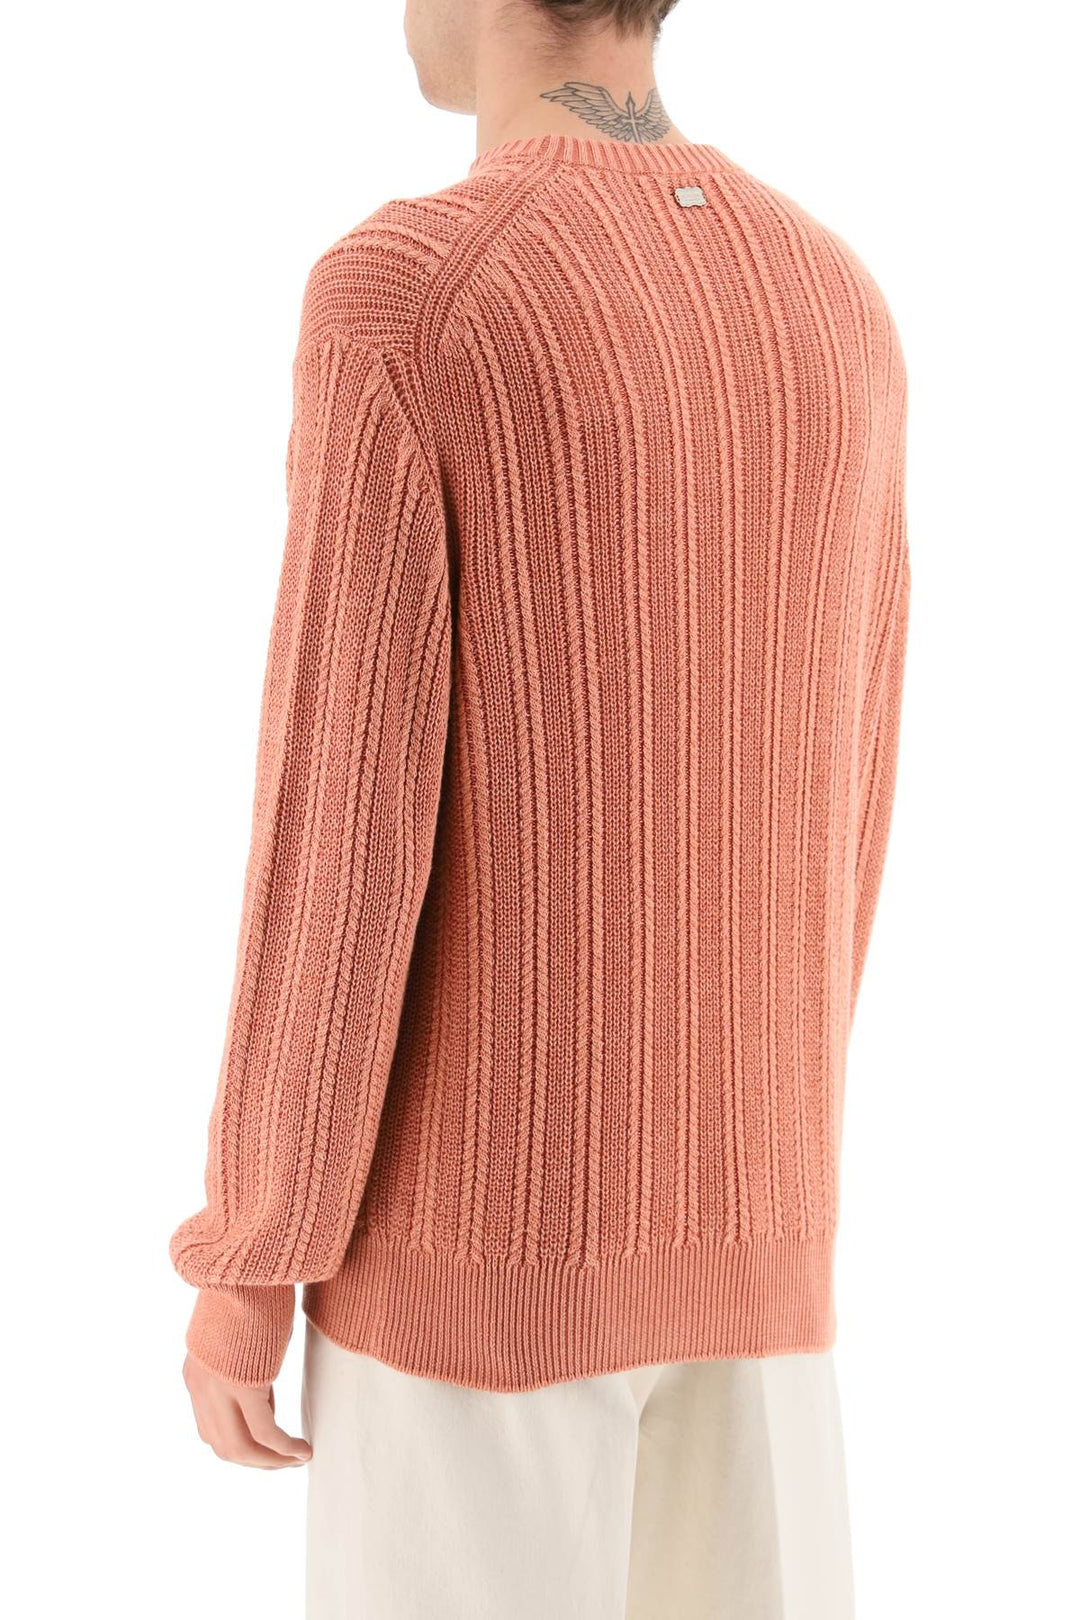 Agnona Cashmere*** Silk And Cotton Sweater   Rosa